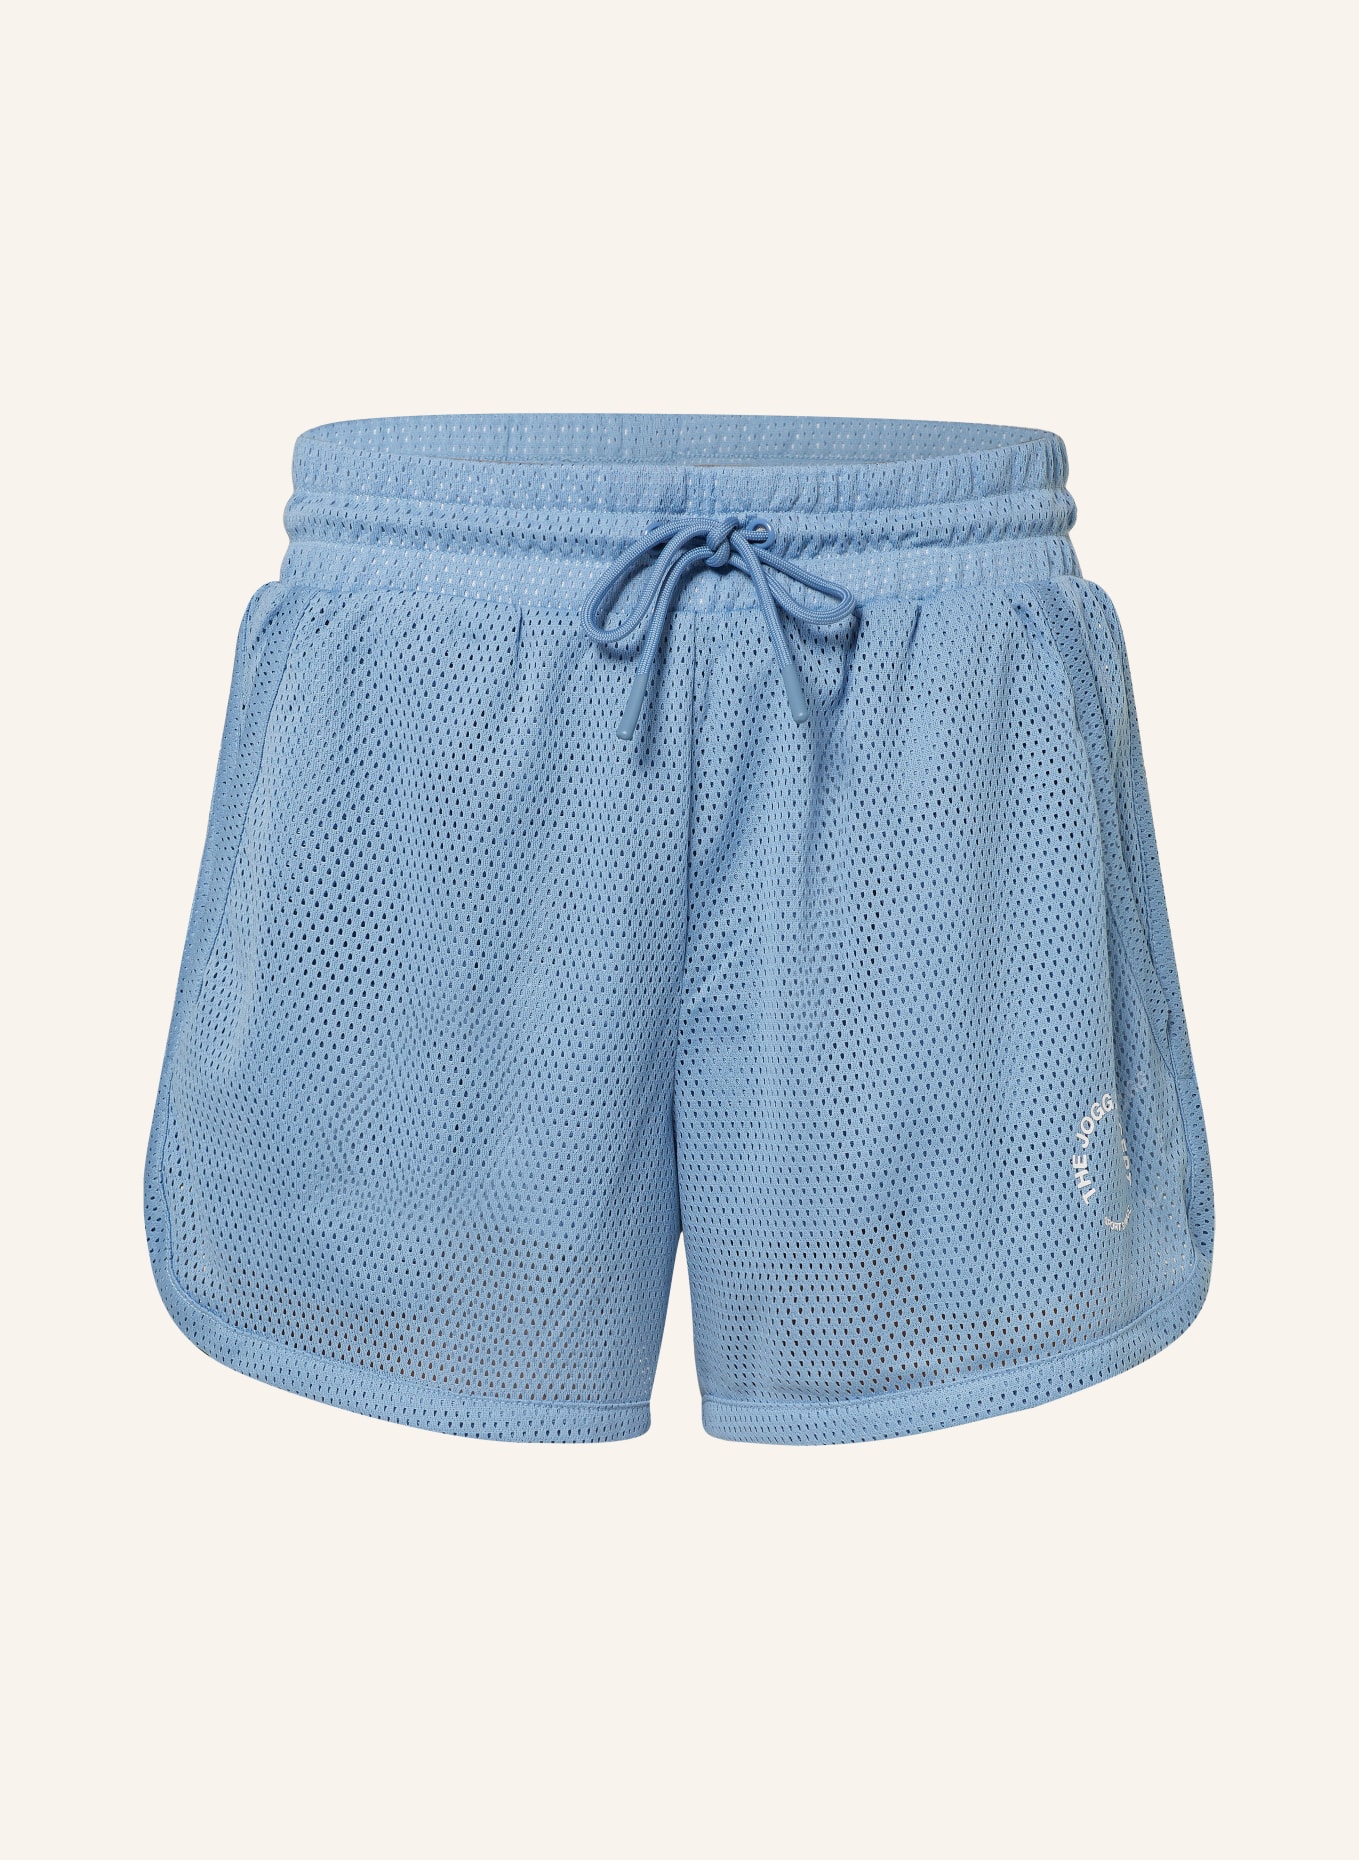 TheJoggConcept 2-in-1 shorts JCTALLI, Color: BLUE (Image 1)